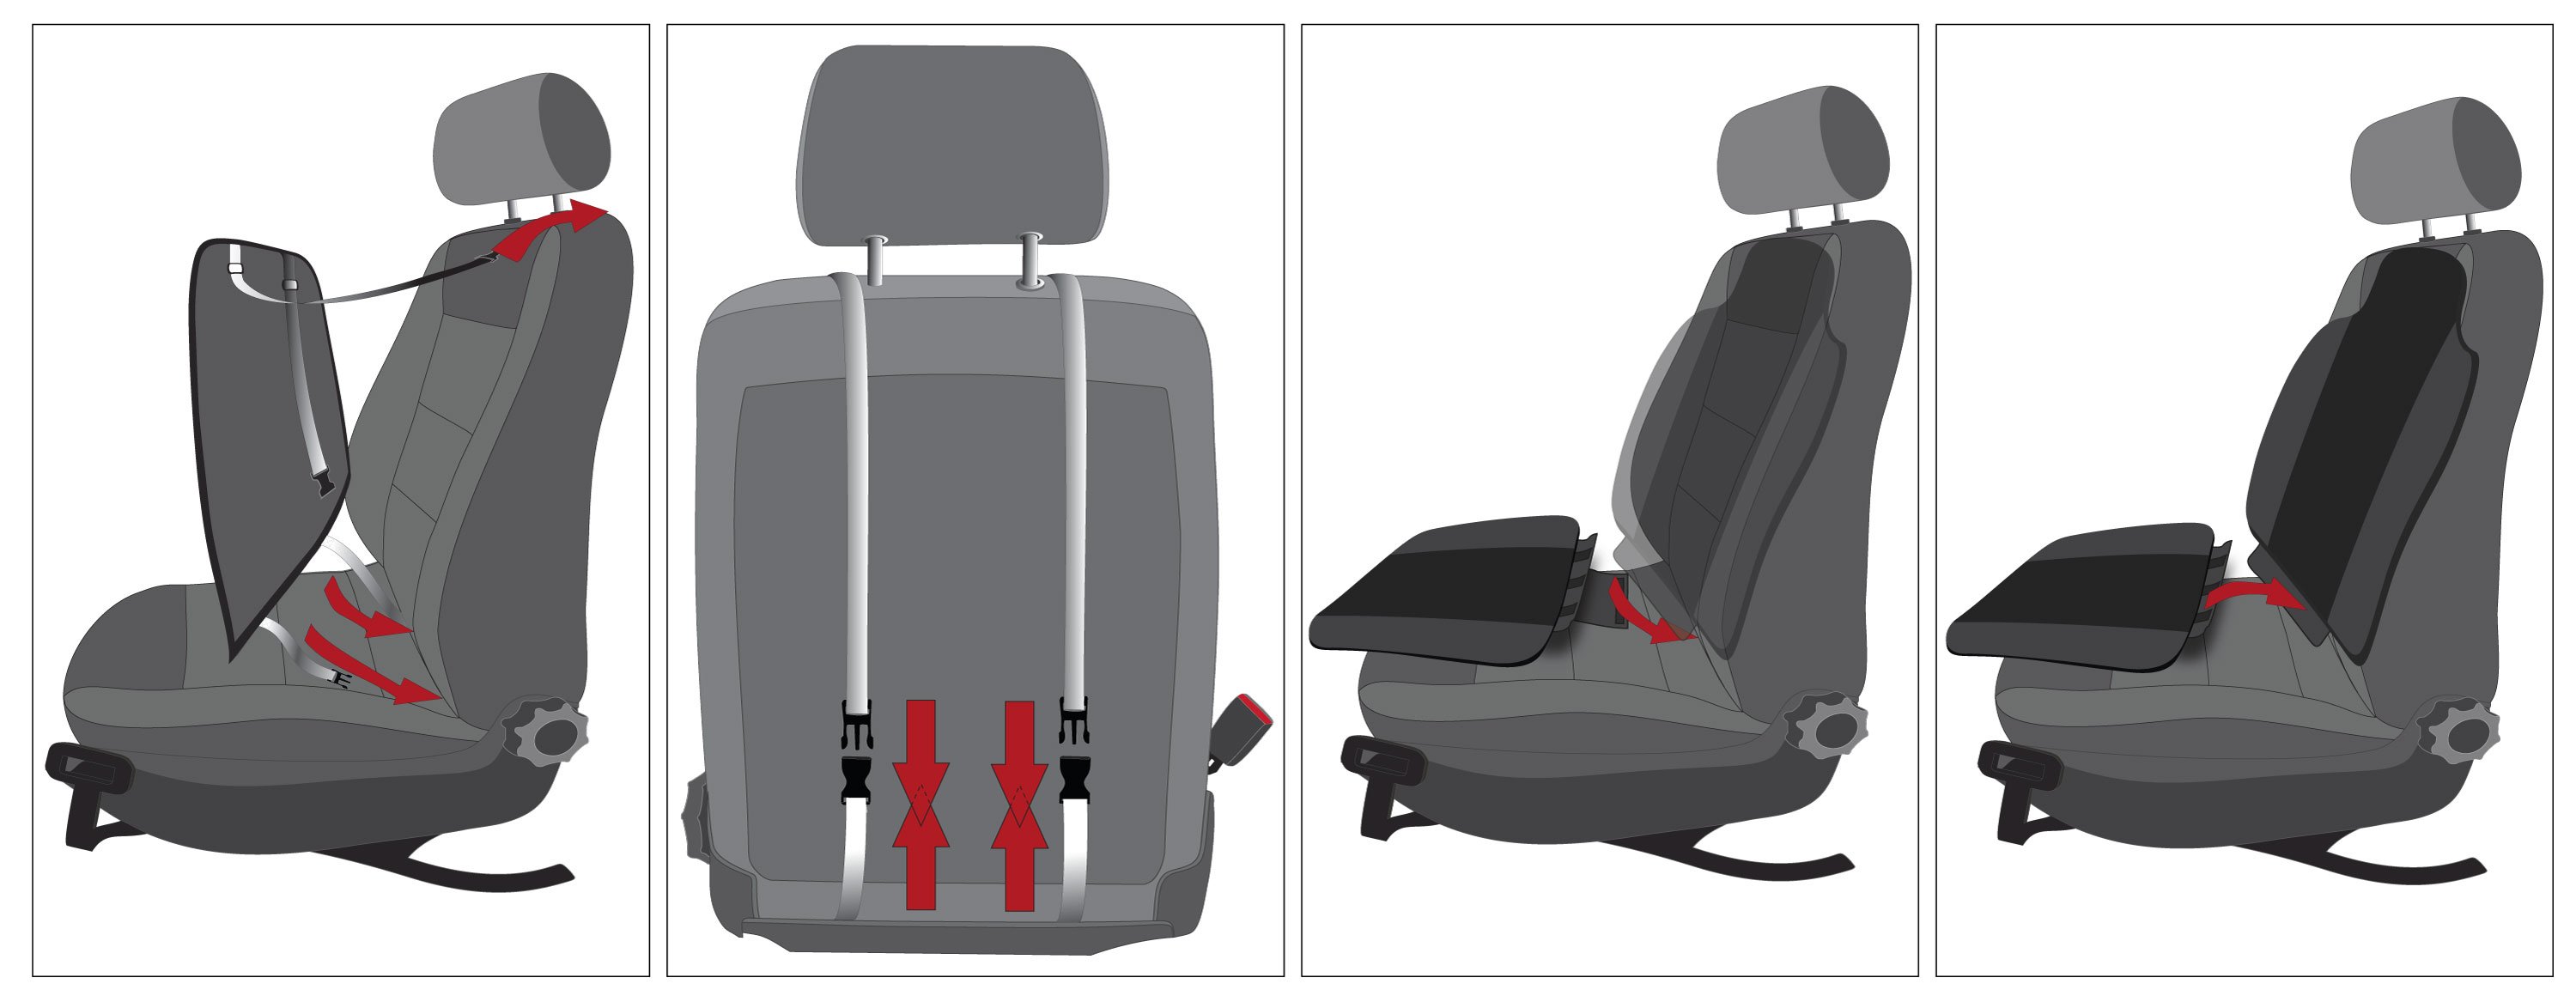 PKW Sitzauflage Aero-Spacer, Auto-Sitzaufleger schwarz